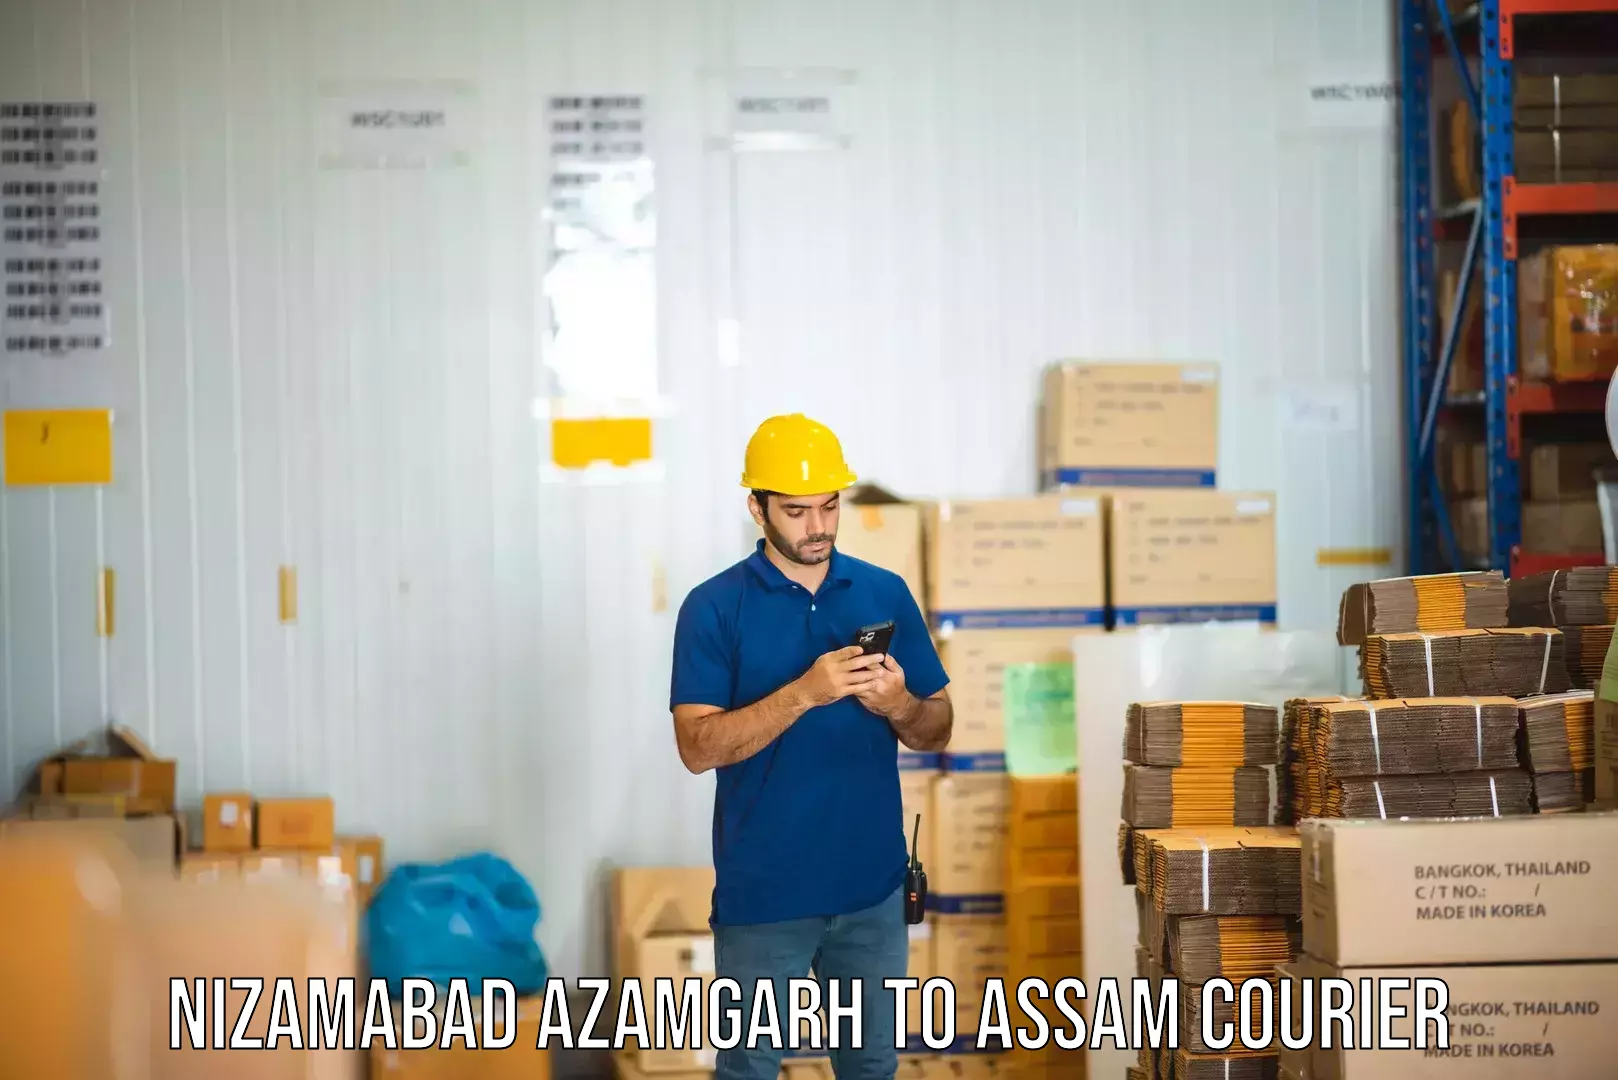 Flexible delivery schedules Nizamabad Azamgarh to Boko